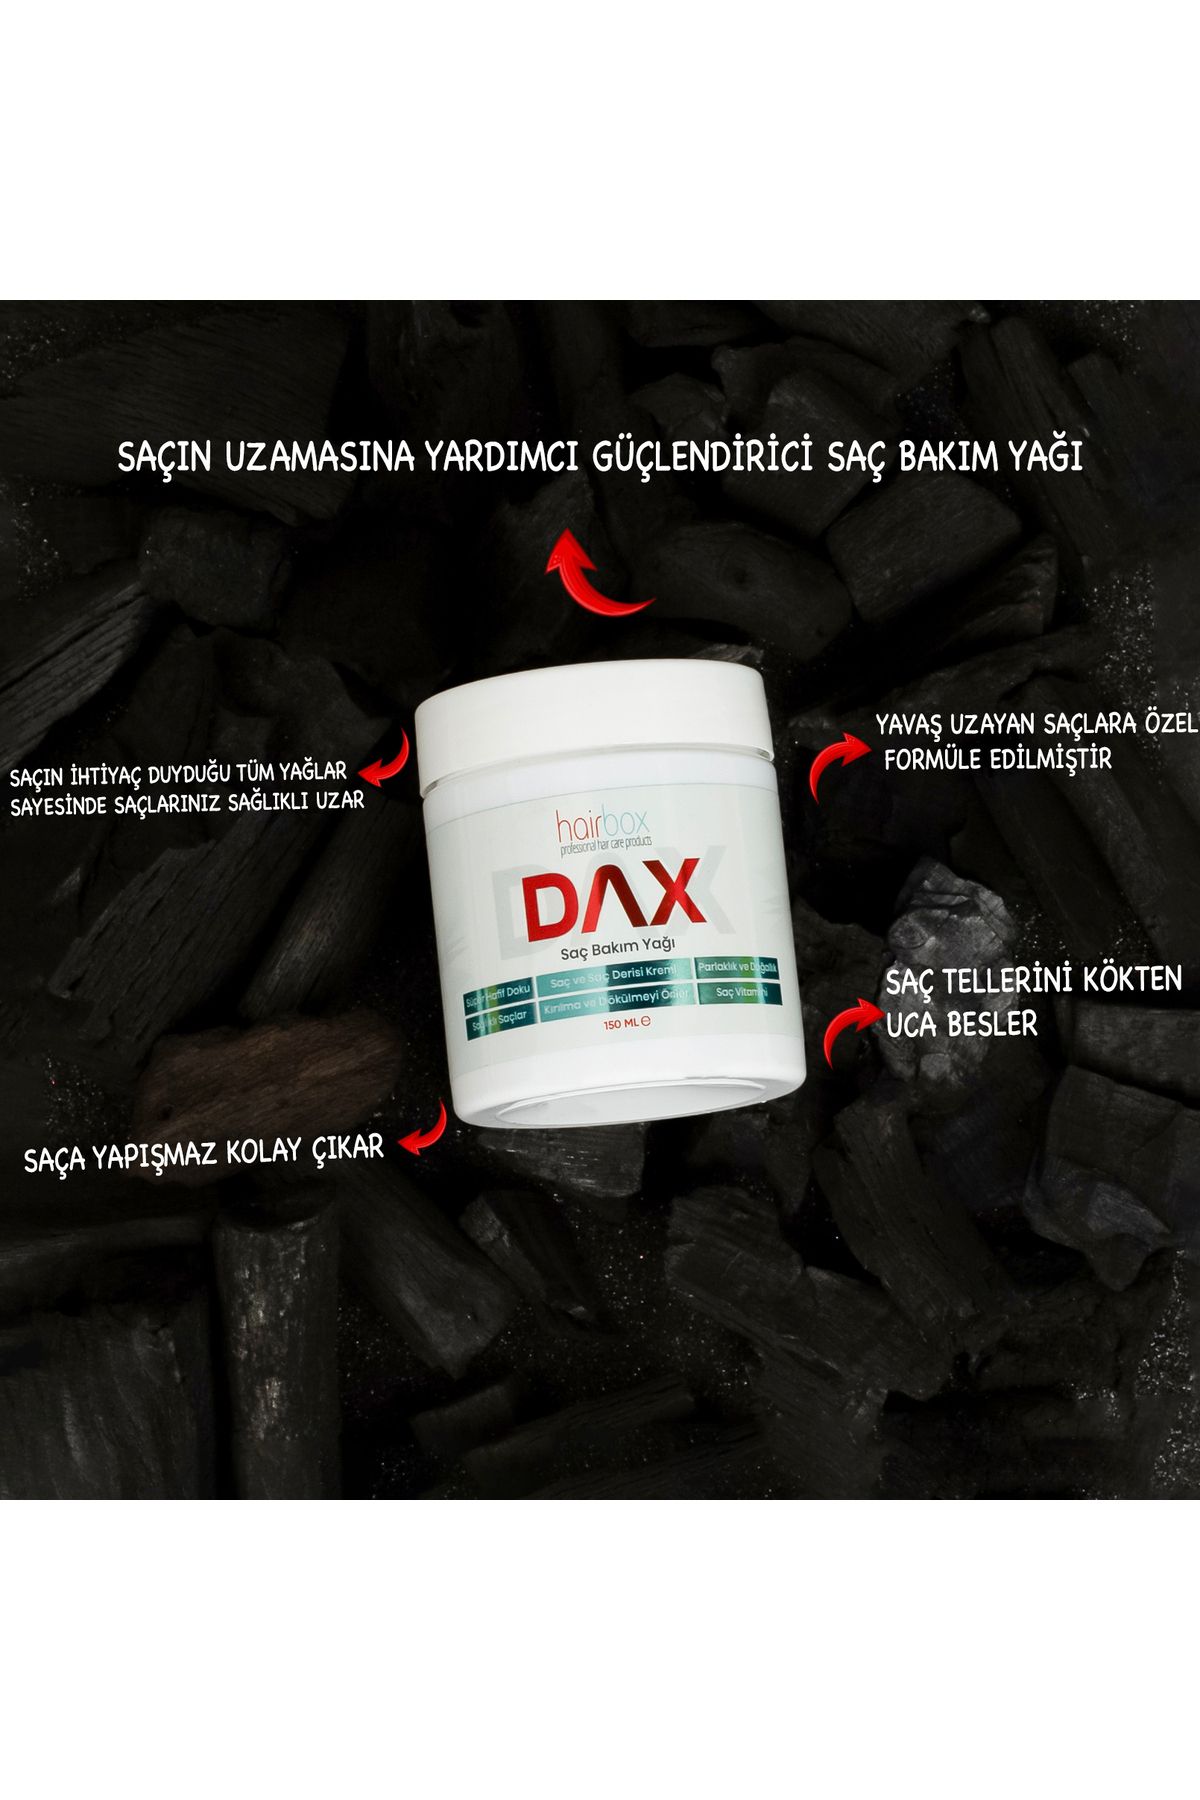 hairbox professional hair care products Dax Hair , Saç Uzatıcı , Dökülme Karşıtı, Saç Kalınlaştırıcı , Saç Gürleştirici, Saç Bakım Yağı